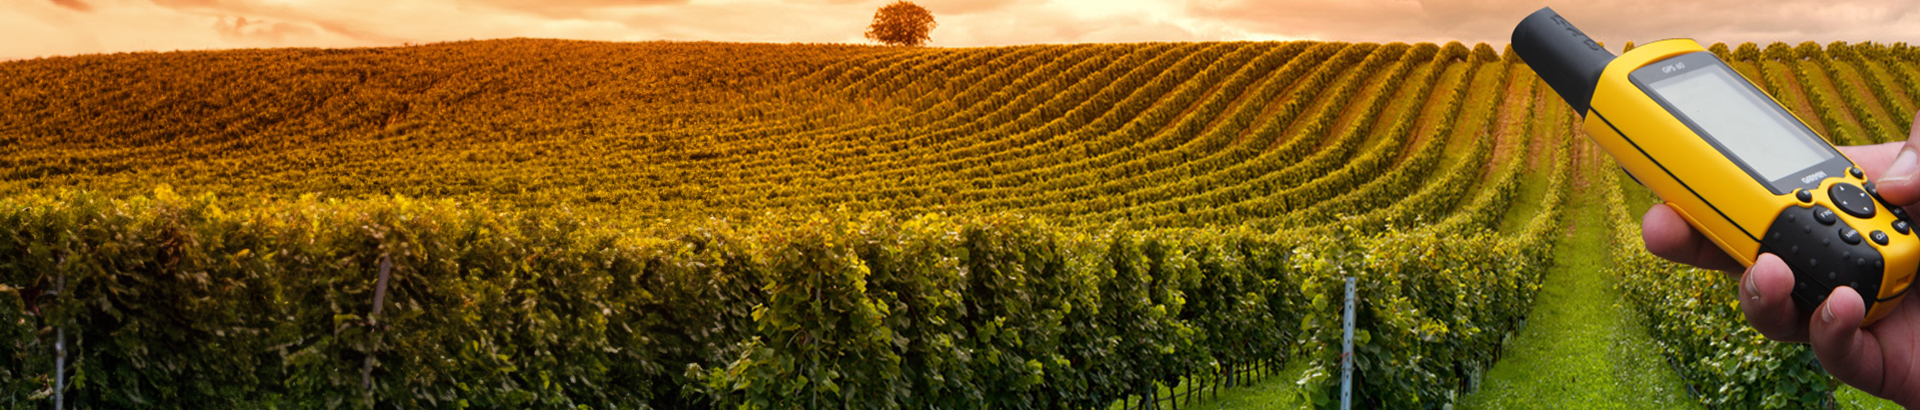 Visitez les plus beaux vignobles de France avec une activité de découverte par l'orientation